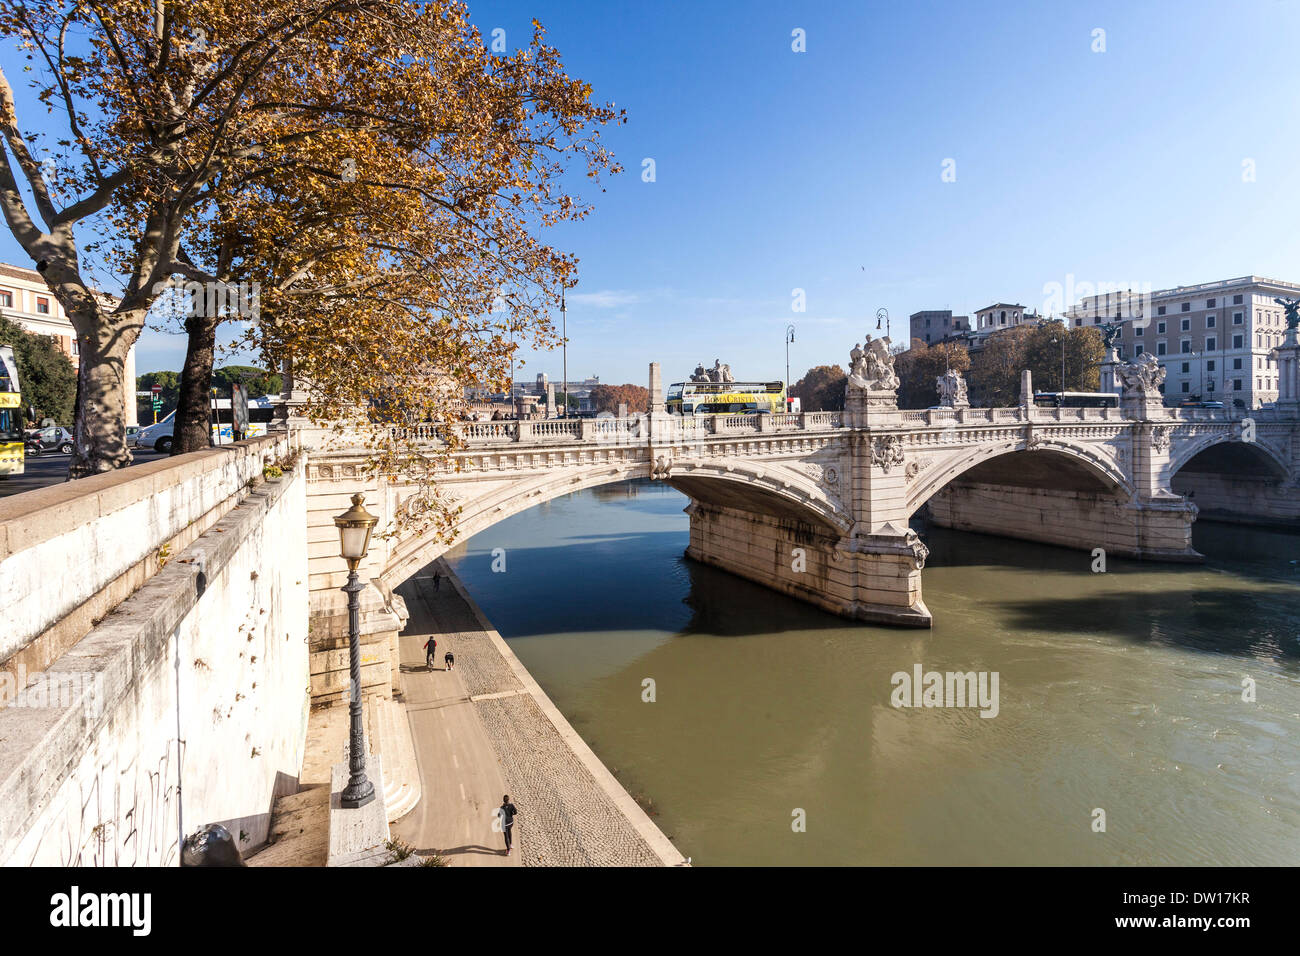 Tiber River scene, Rome Italy. Stock Photo